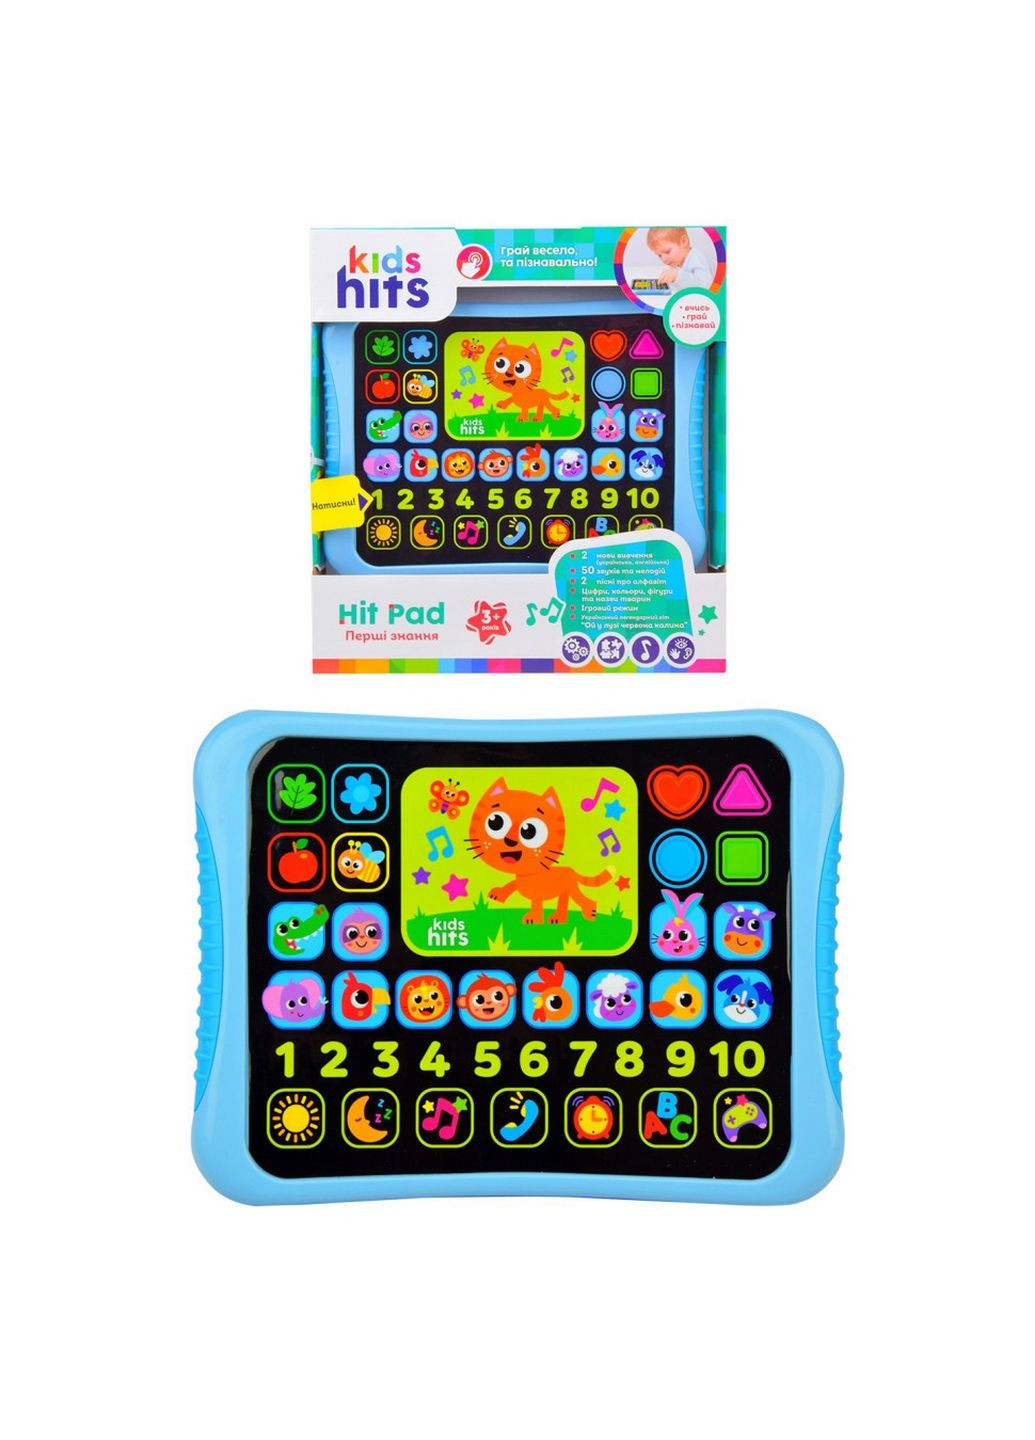 Интерактивный планшет "первые знания" укр и англ. языки обучения, цифры, цвета Kids Hits (282593846)